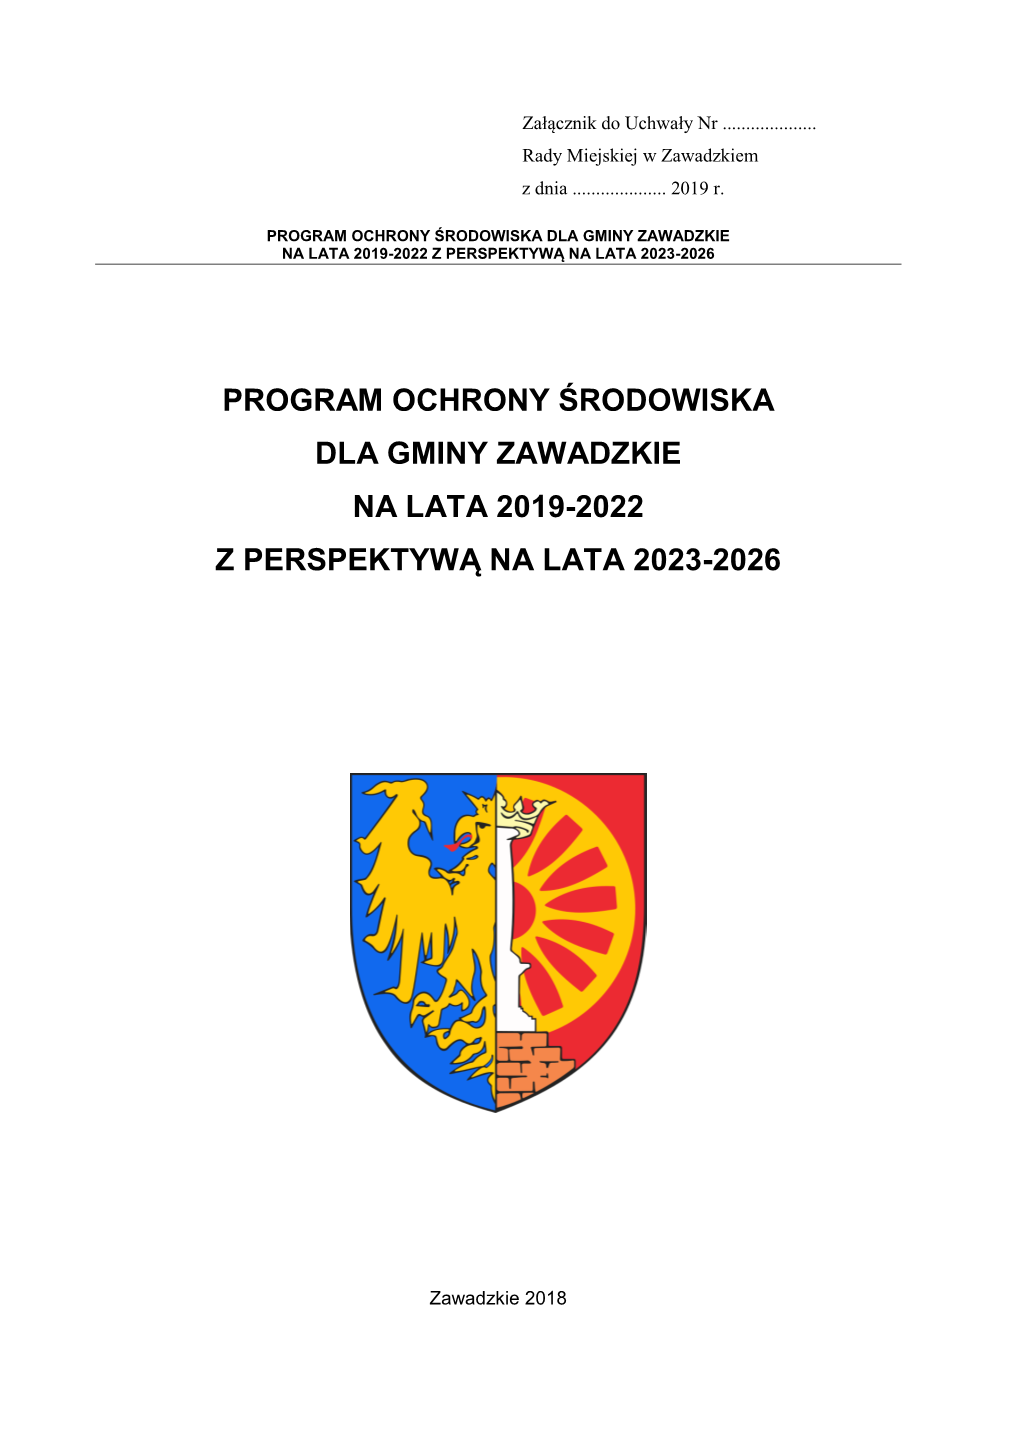 Program Ochrony Środowiska Dla Gminy Zawadzkie Na Lata 2019-2022 Z Perspektywą Na Lata 2023-2026